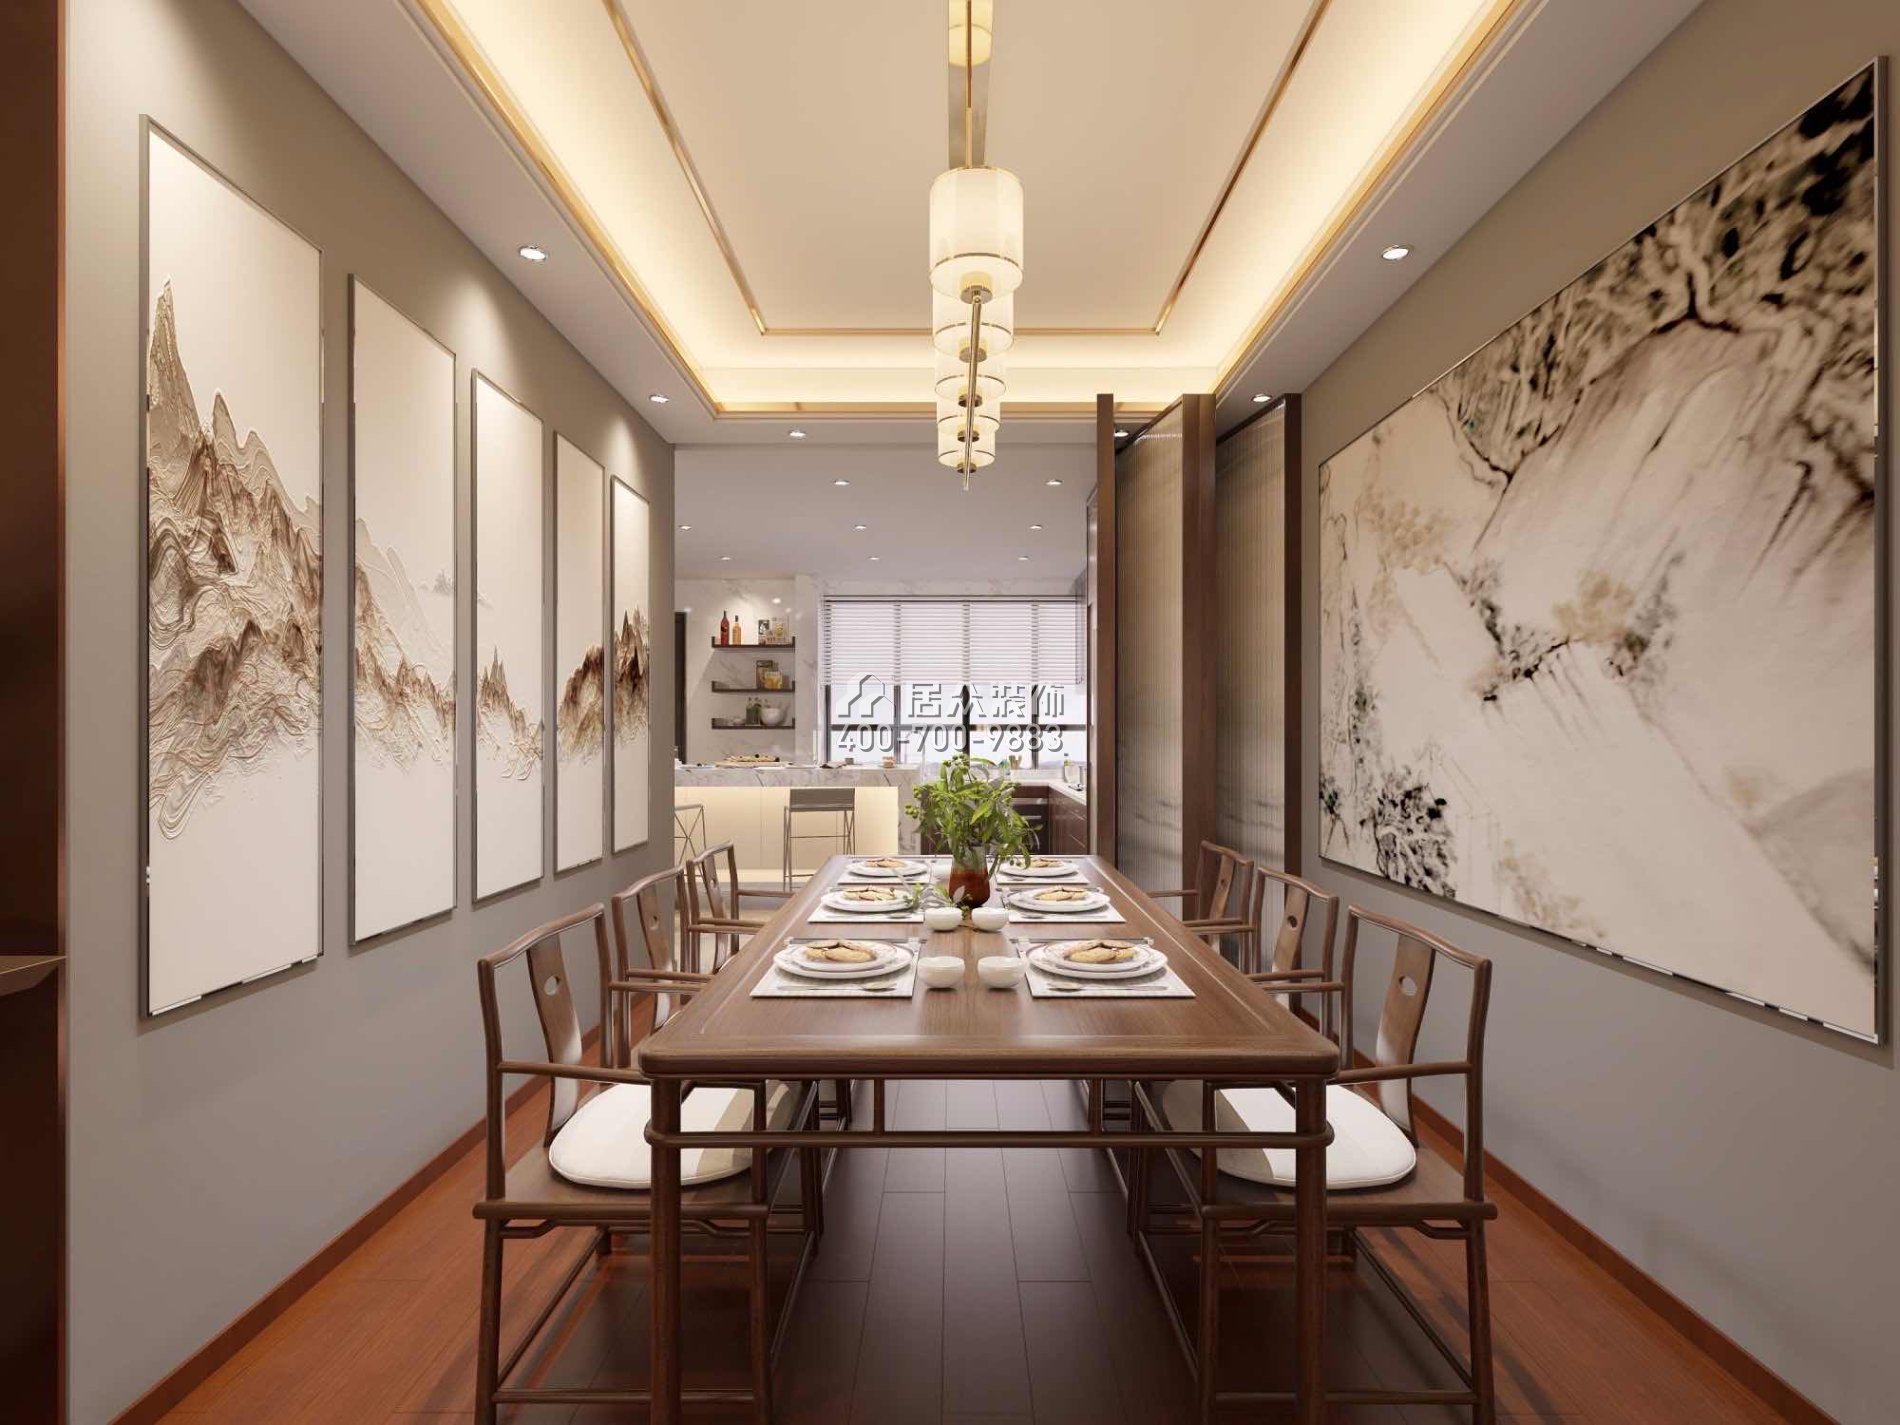 广东省珠海市香洲区216平方米中式风格平层户型餐厅装修效果图